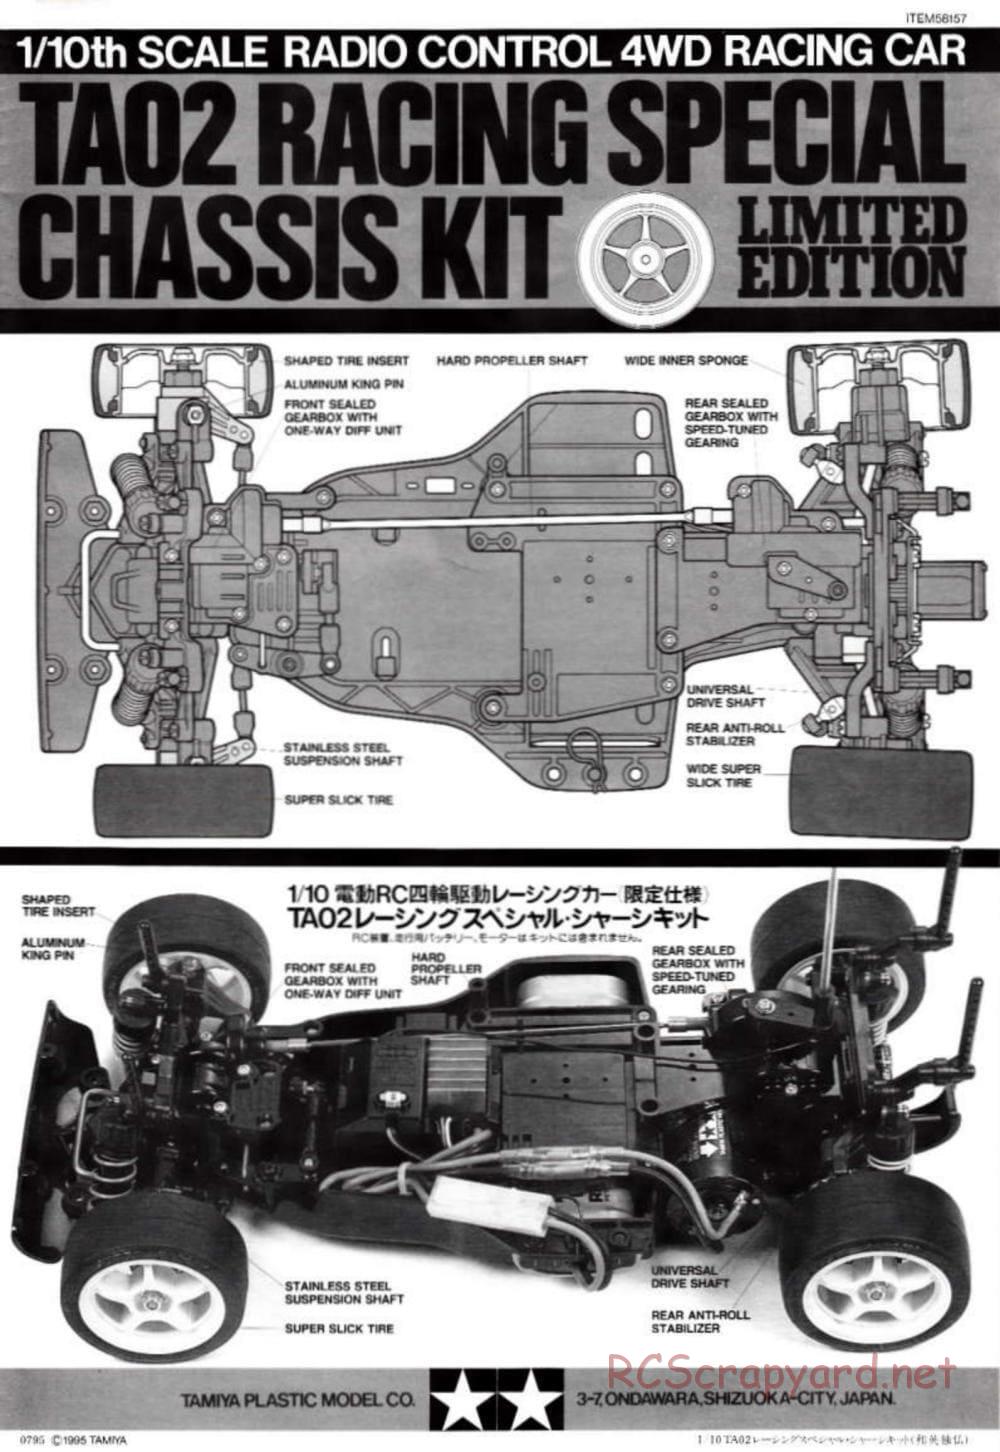 Tamiya - TA-02RS Chassis - Manual - Page 1